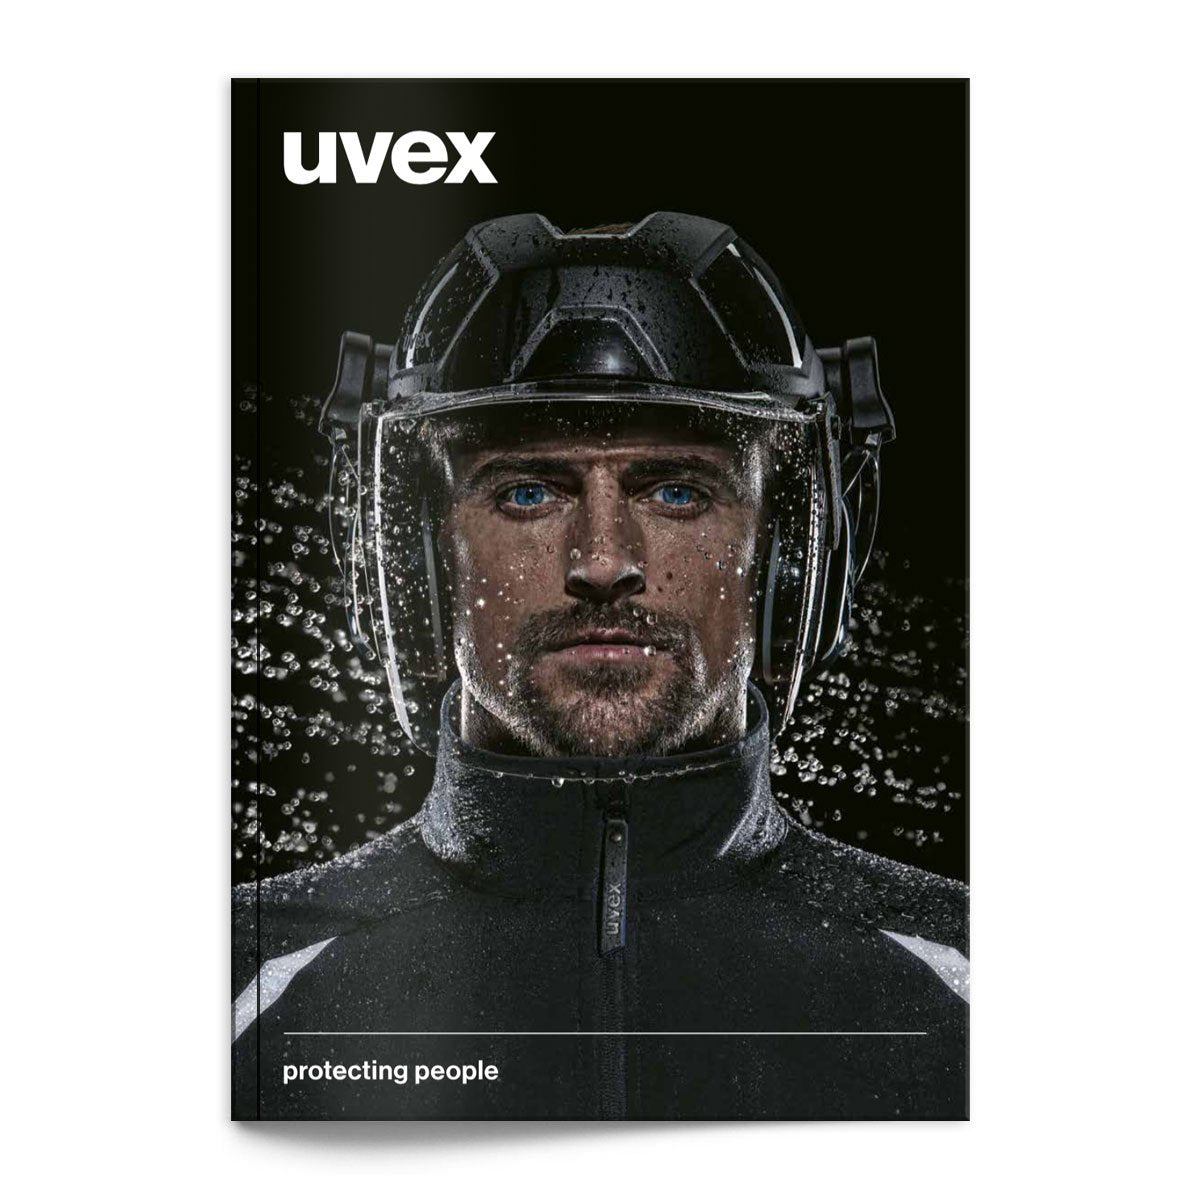 Uvex Digital Catalogue Catalogues Honeywell Uvex Tactical Gear Supplier Tactical Distributors Australia